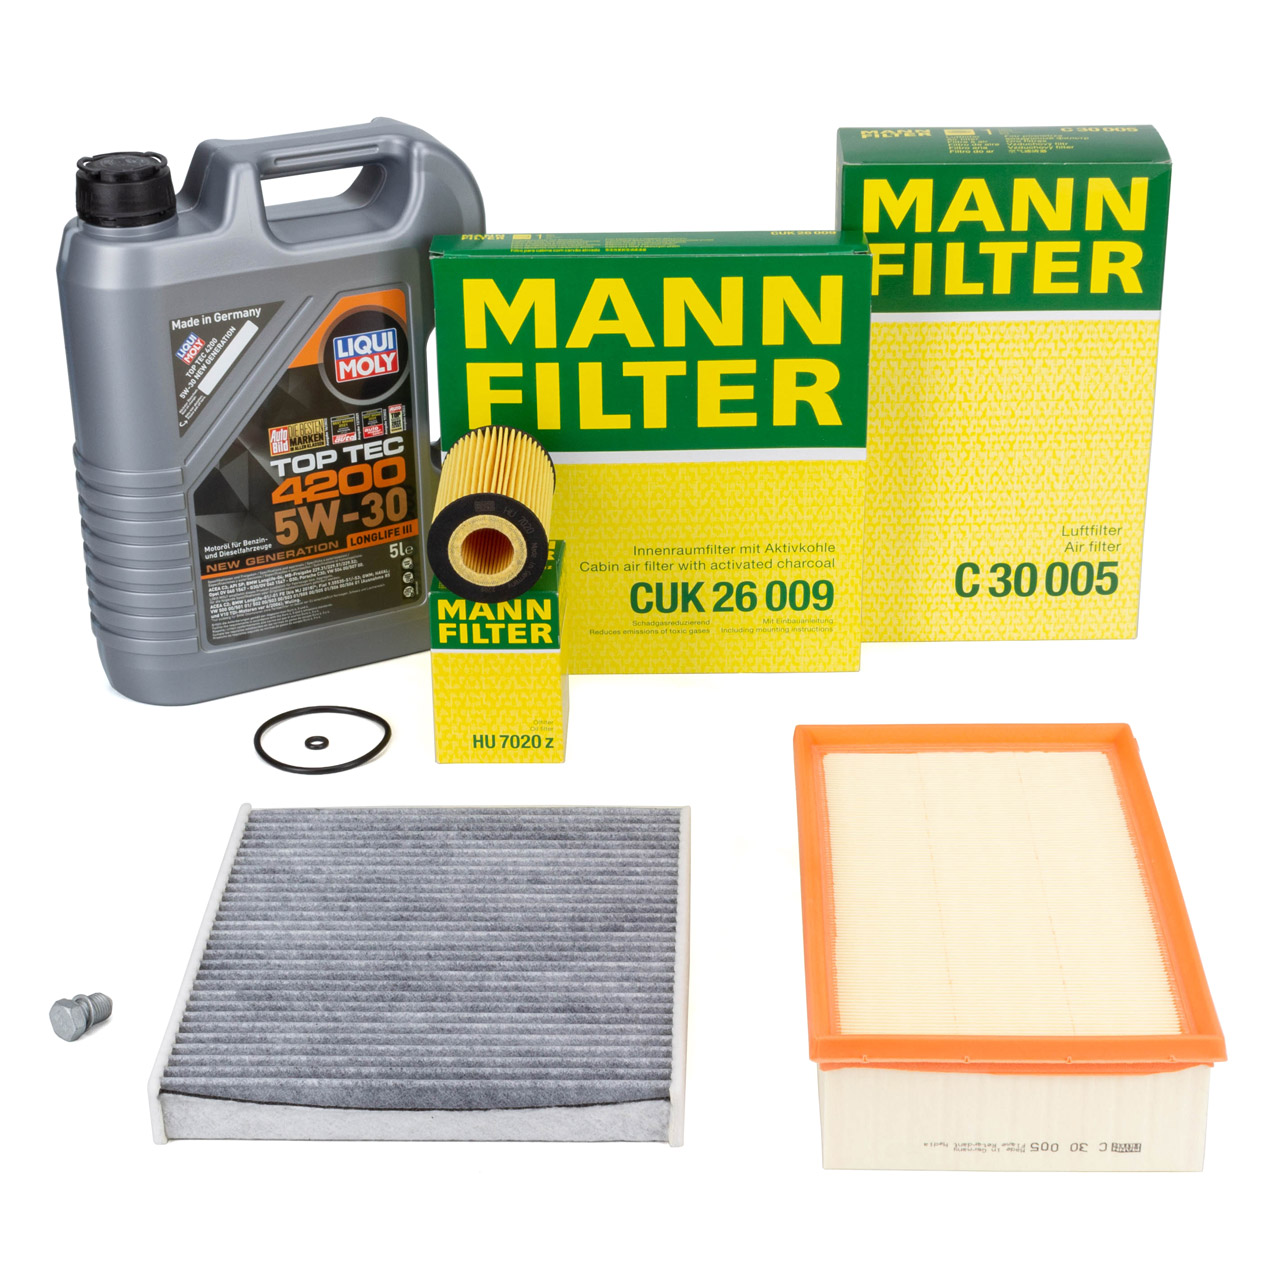 MANN-FILTER Wartungspakete / große Inspektion - CUK 26 009, C 30 005, HU  7020 Z, N 908 132 02, 3707 